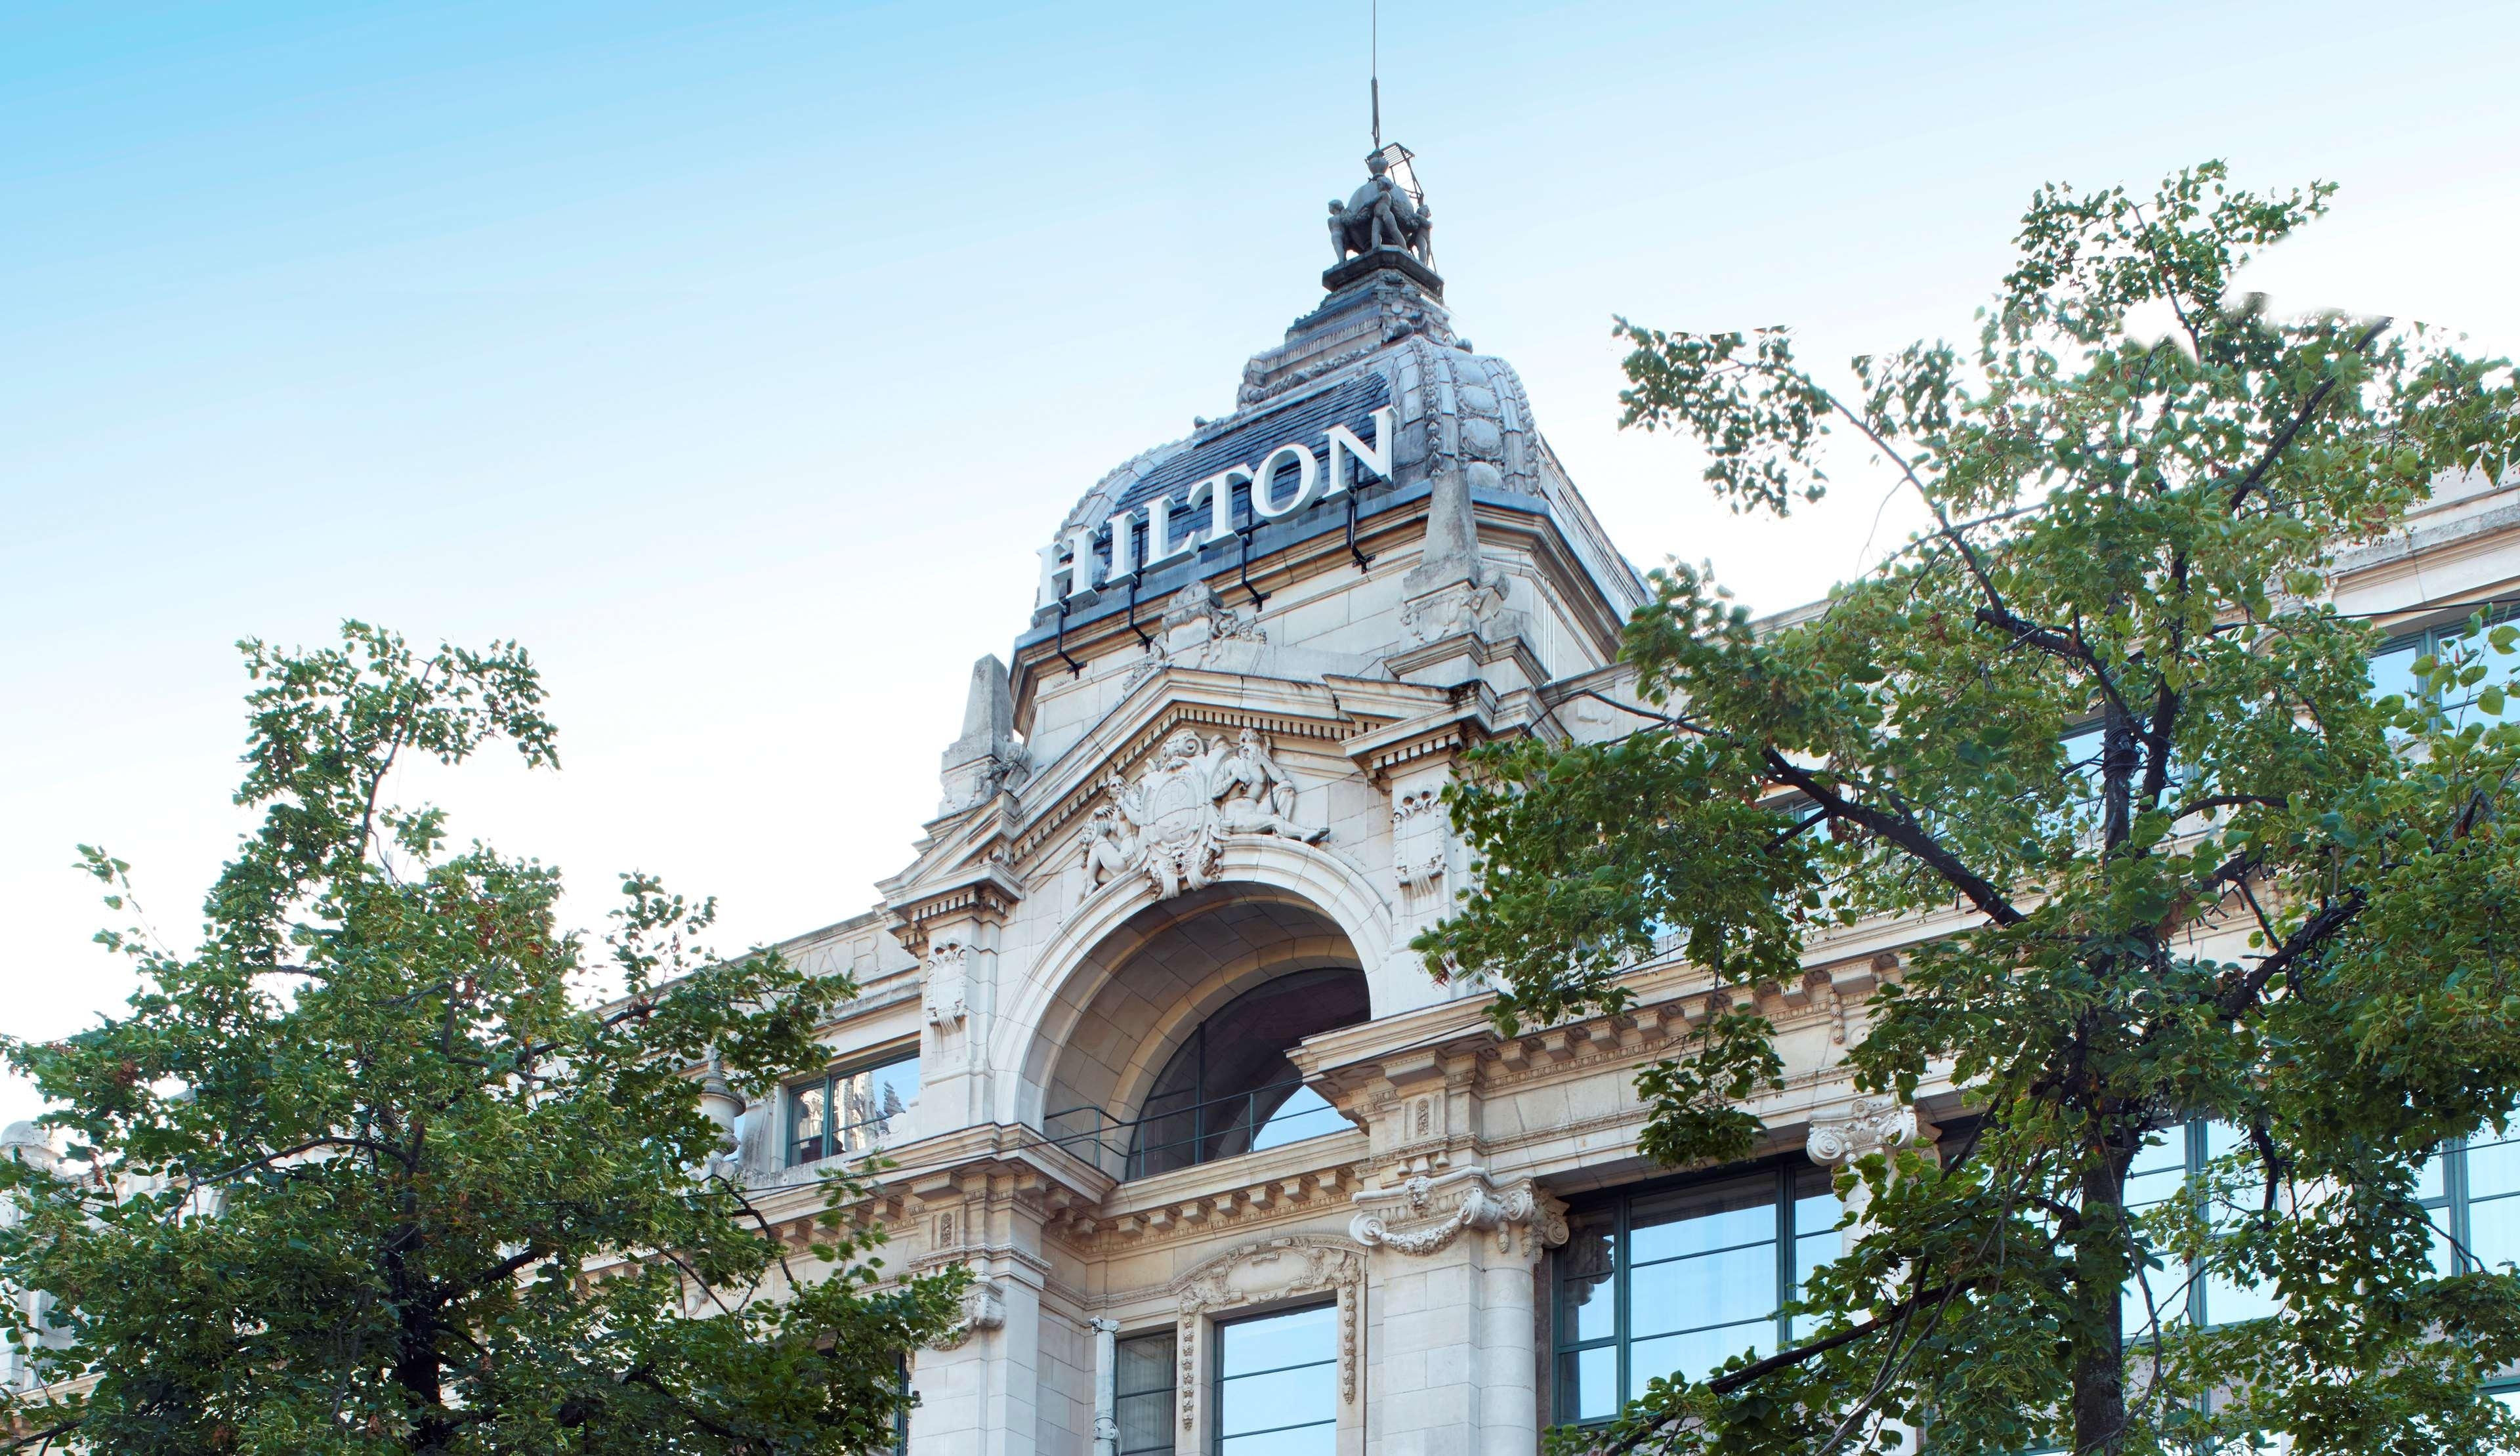 Hilton Antwerpens gamle bydel